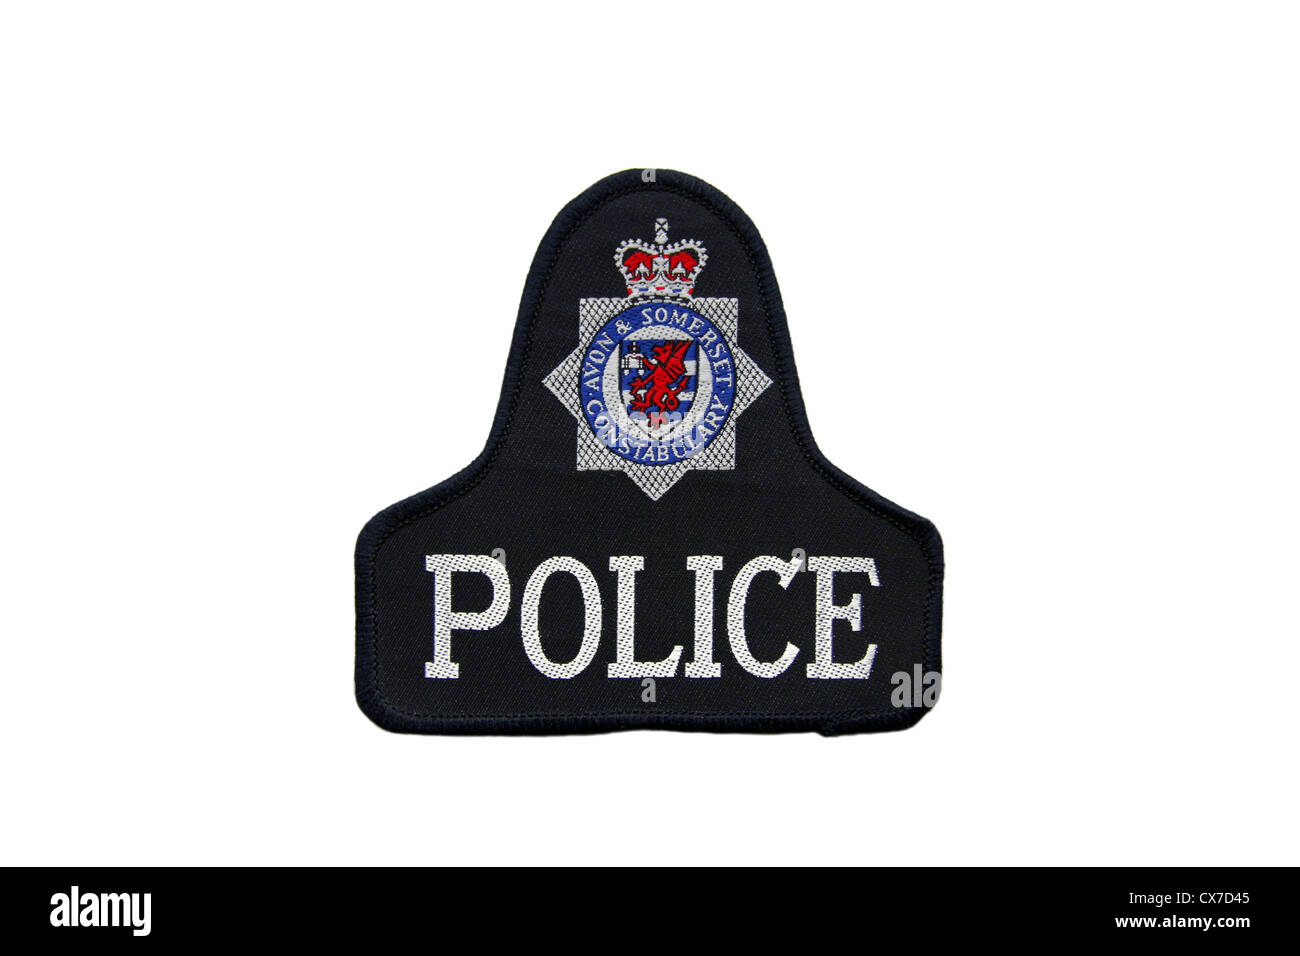 Avon und Somerset Constabulary Polizei-patch Stockfoto